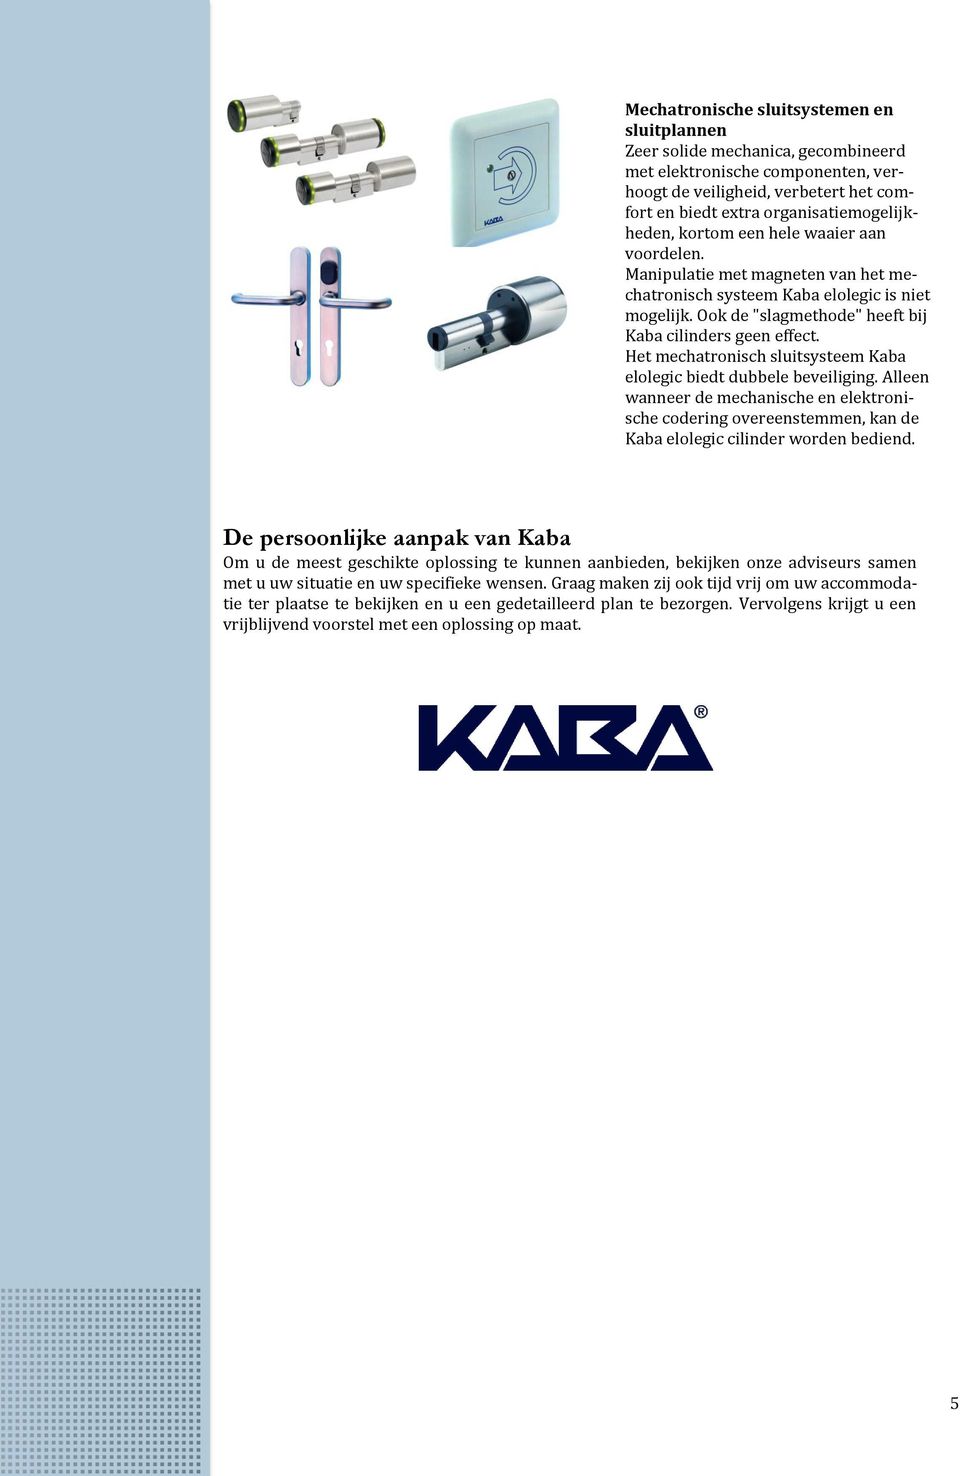 Het mechatronisch sluitsysteem Kaba elolegic biedt dubbele beveiliging. Alleen wanneer de mechanische en elektronische codering overeenstemmen, kan de Kaba elolegic cilinder worden bediend.